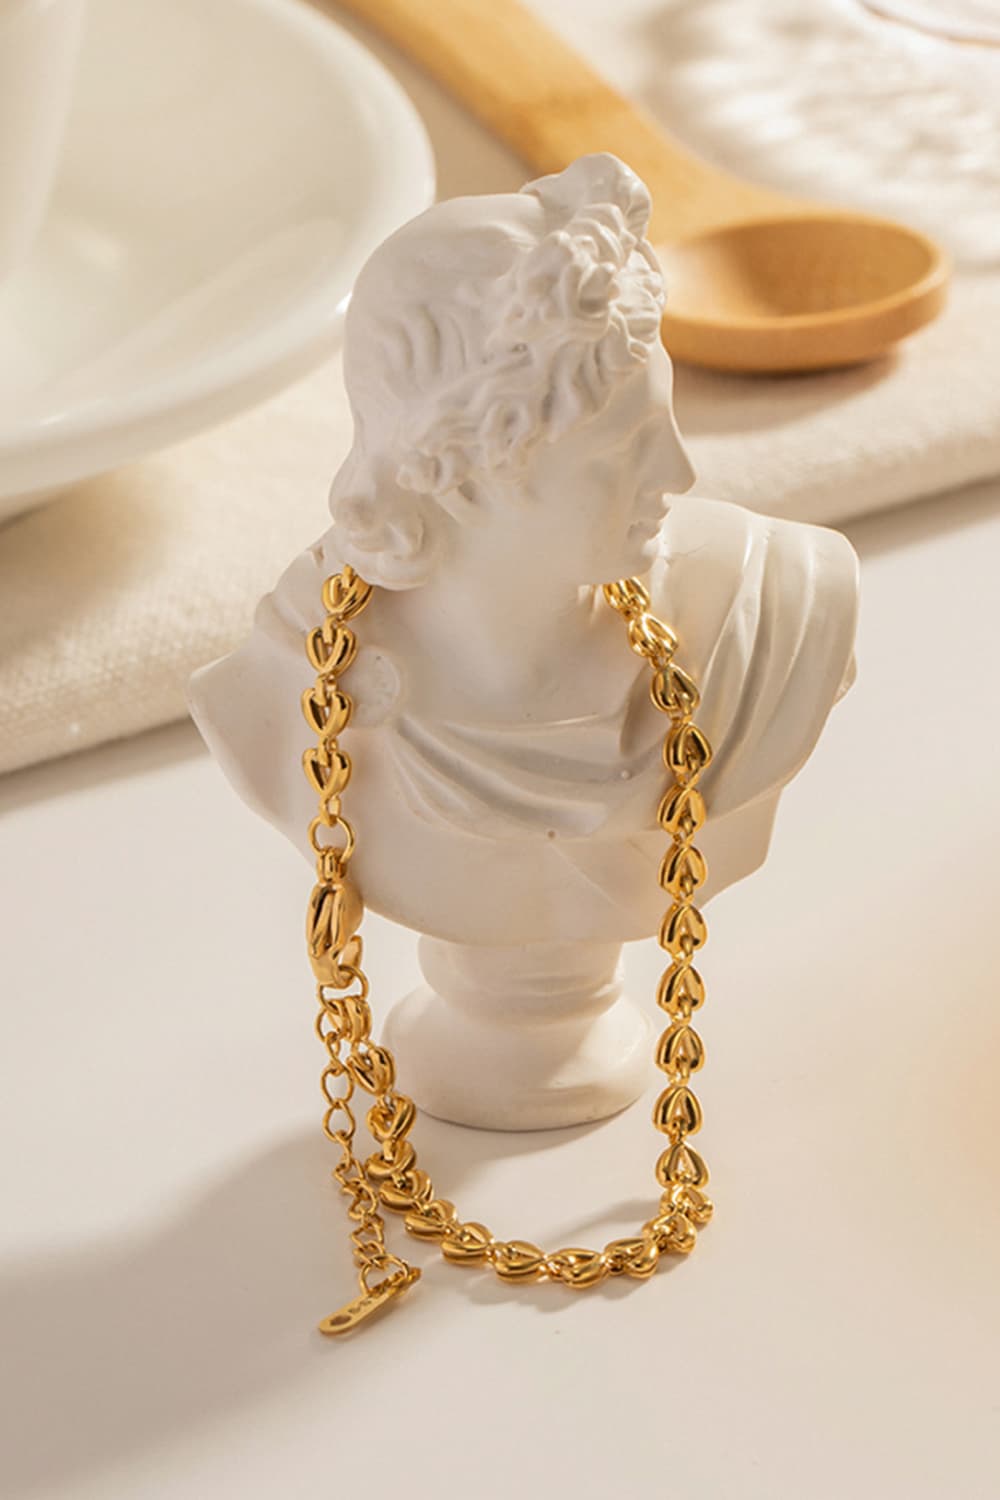 Heart Chain Lobster Clasp Bracelet - Gold / One Size - Women’s Jewelry - Bracelets - 7 - 2024